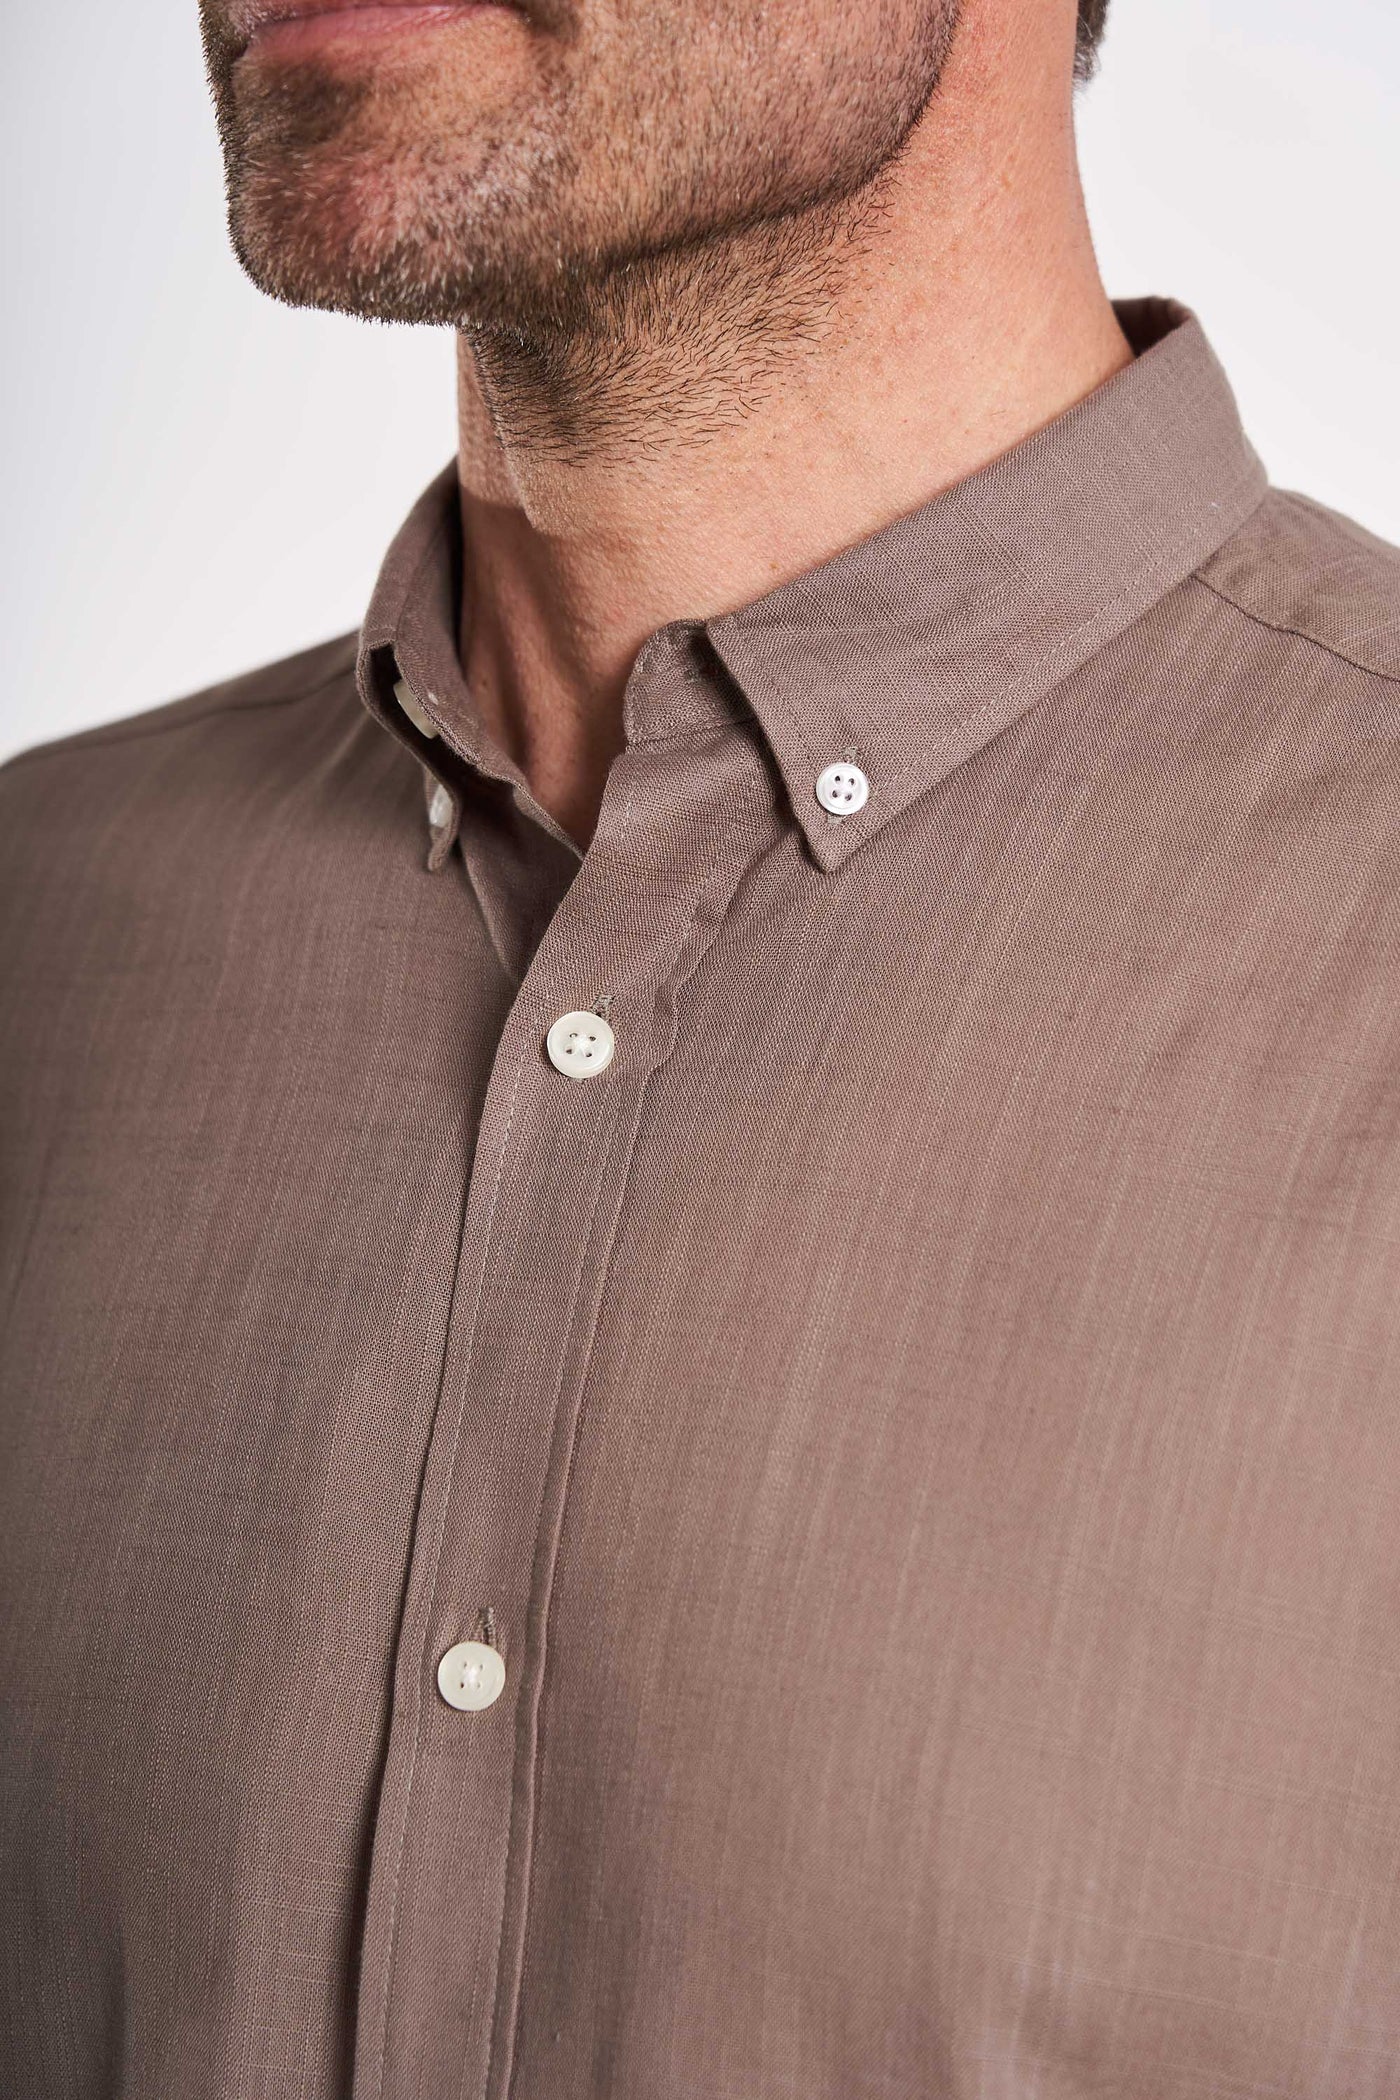 S/S Linen Look Shirt - Khaki